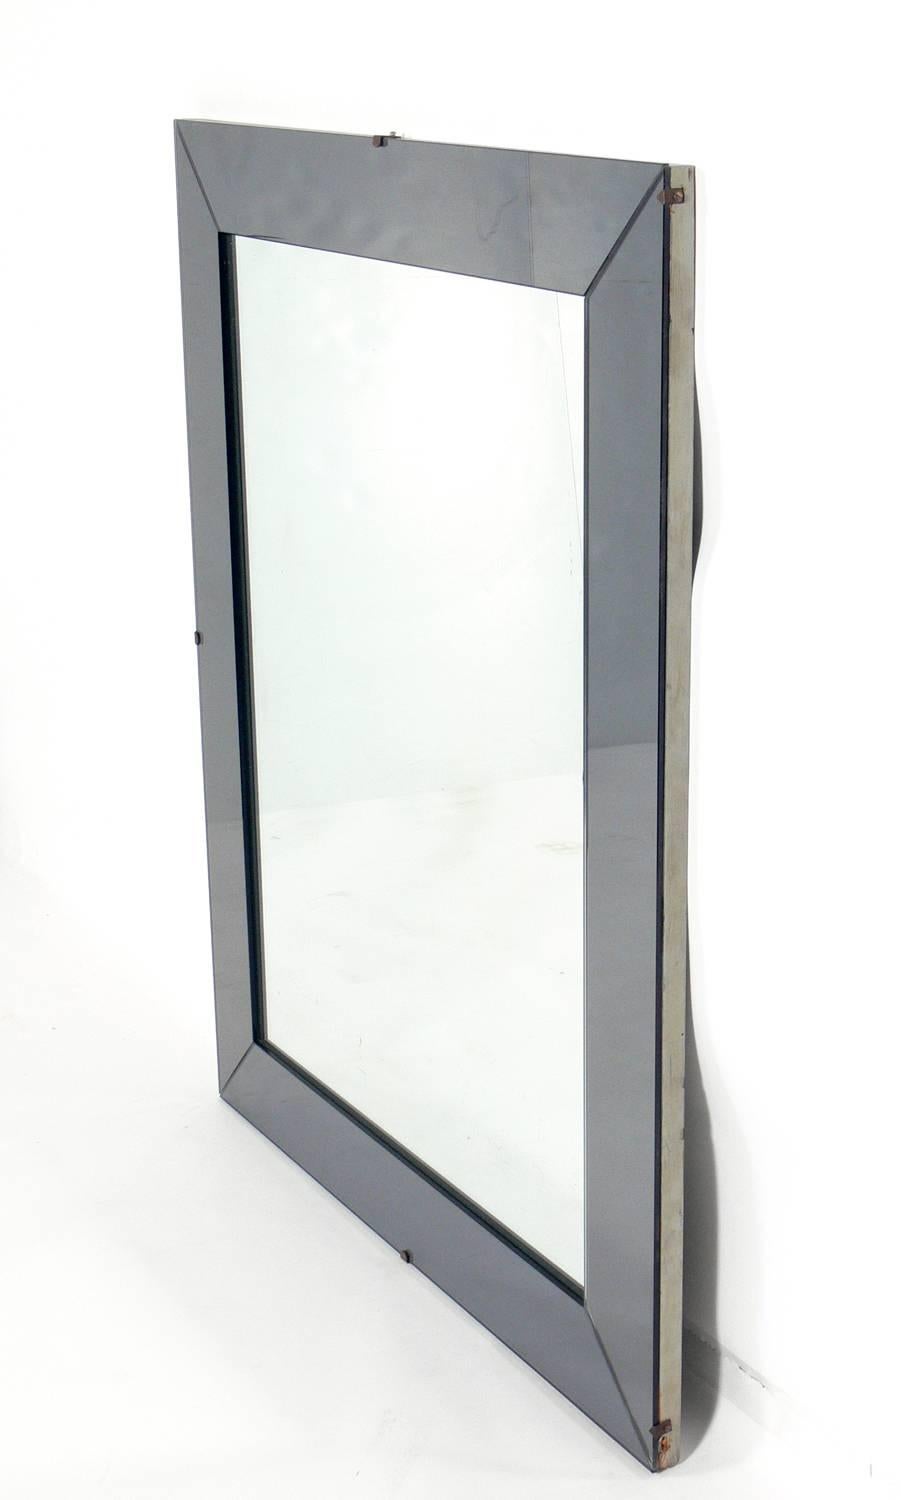 Eleganter Spiegel mit verspiegeltem Glasrahmen in Rotgussfarbe, amerikanisch, ca. 1950er Jahre. Er kann horizontal oder vertikal aufgehängt werden. Behält die warme Originalpatina des originalen Spiegelglases.